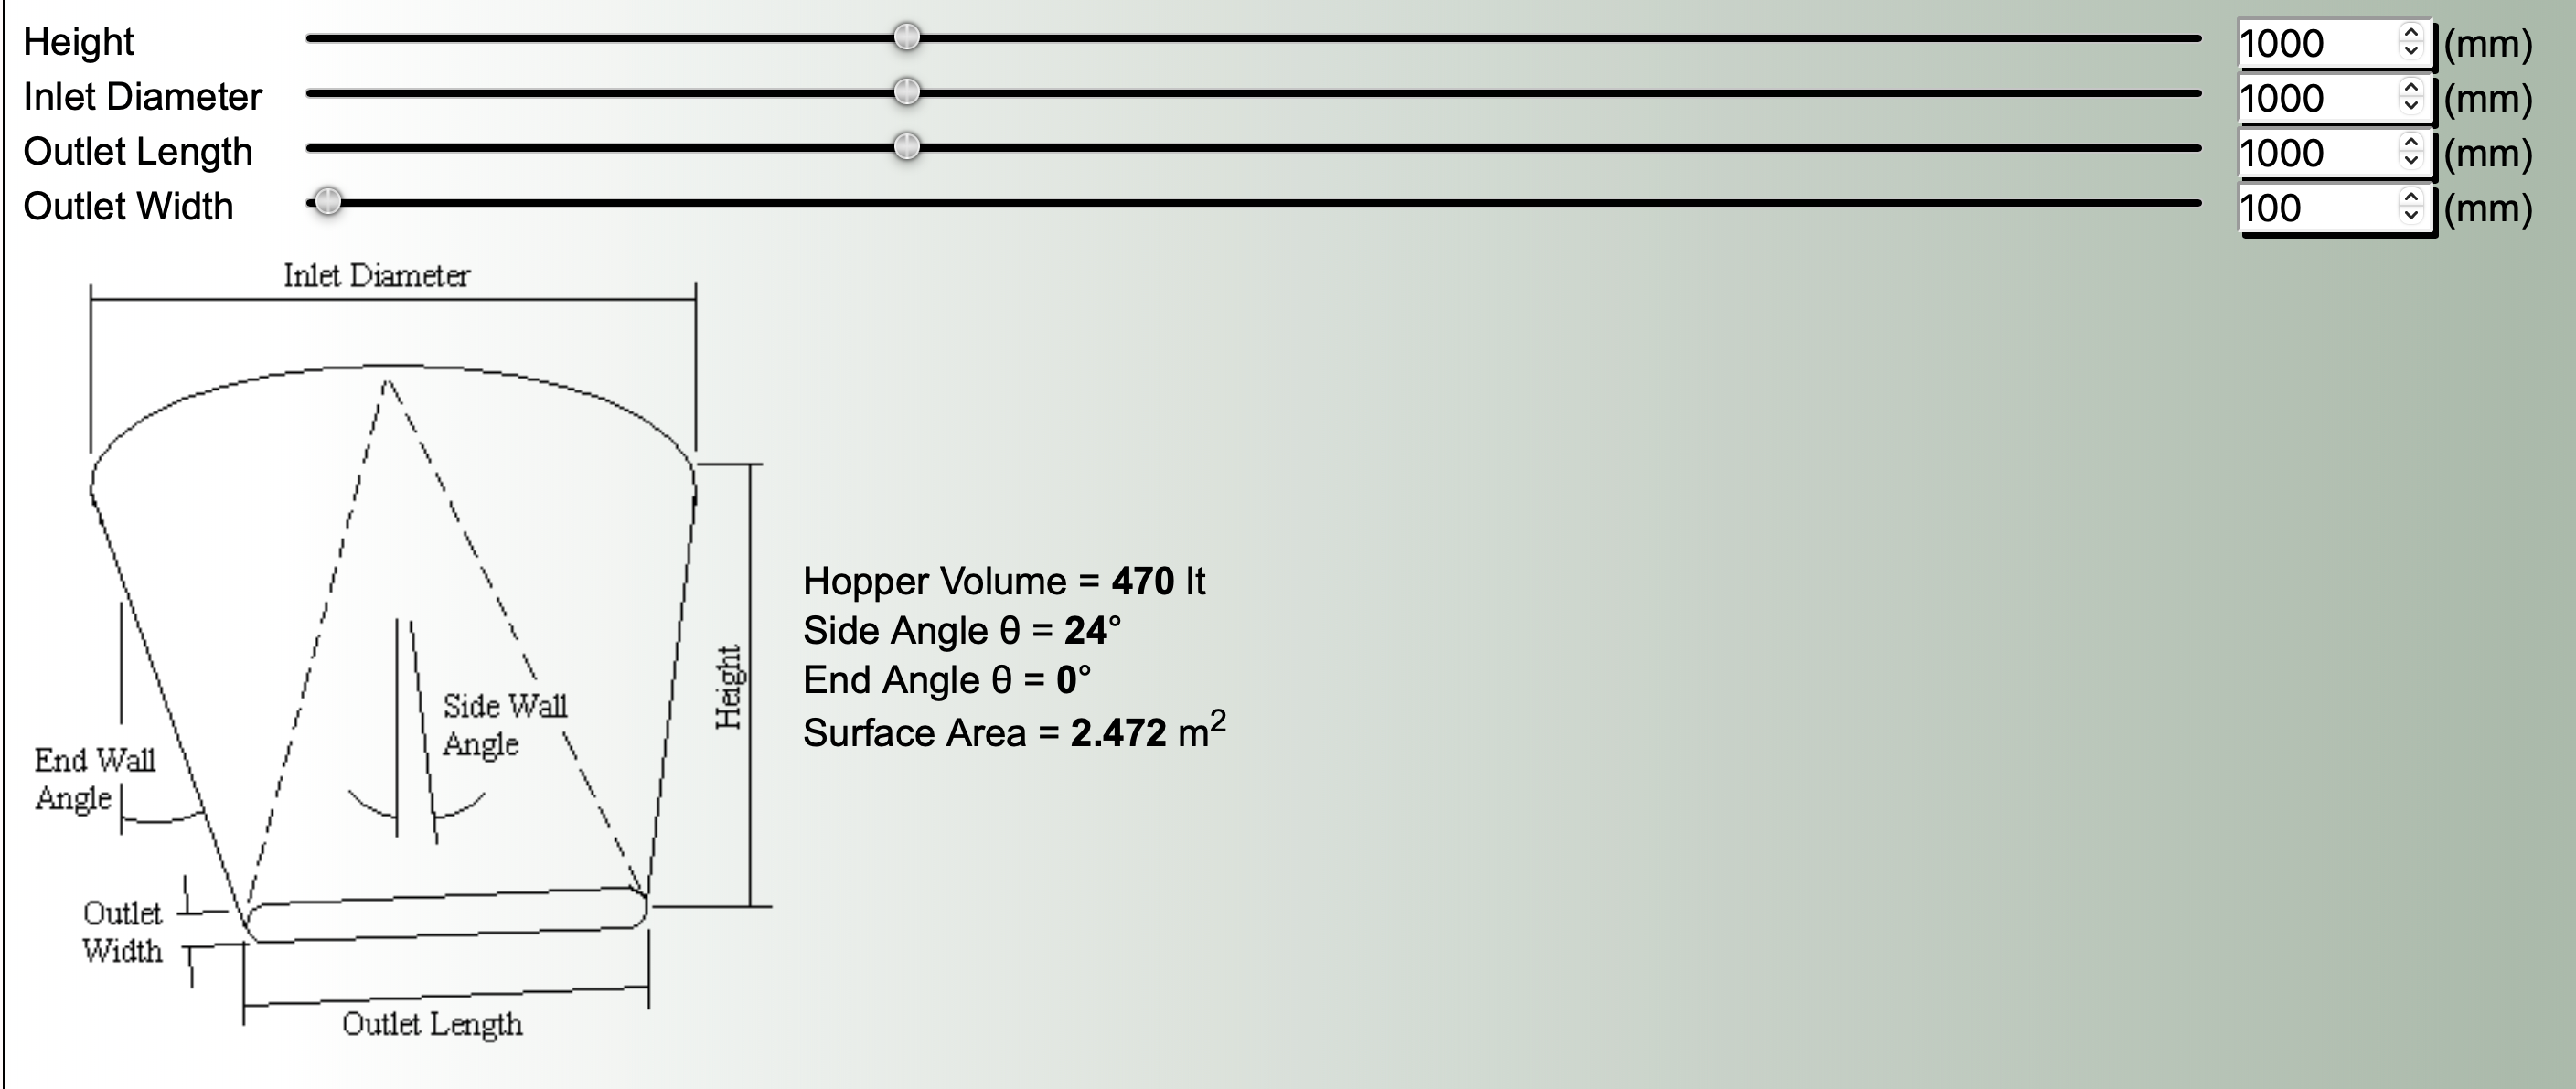 Transition Hopper Volume